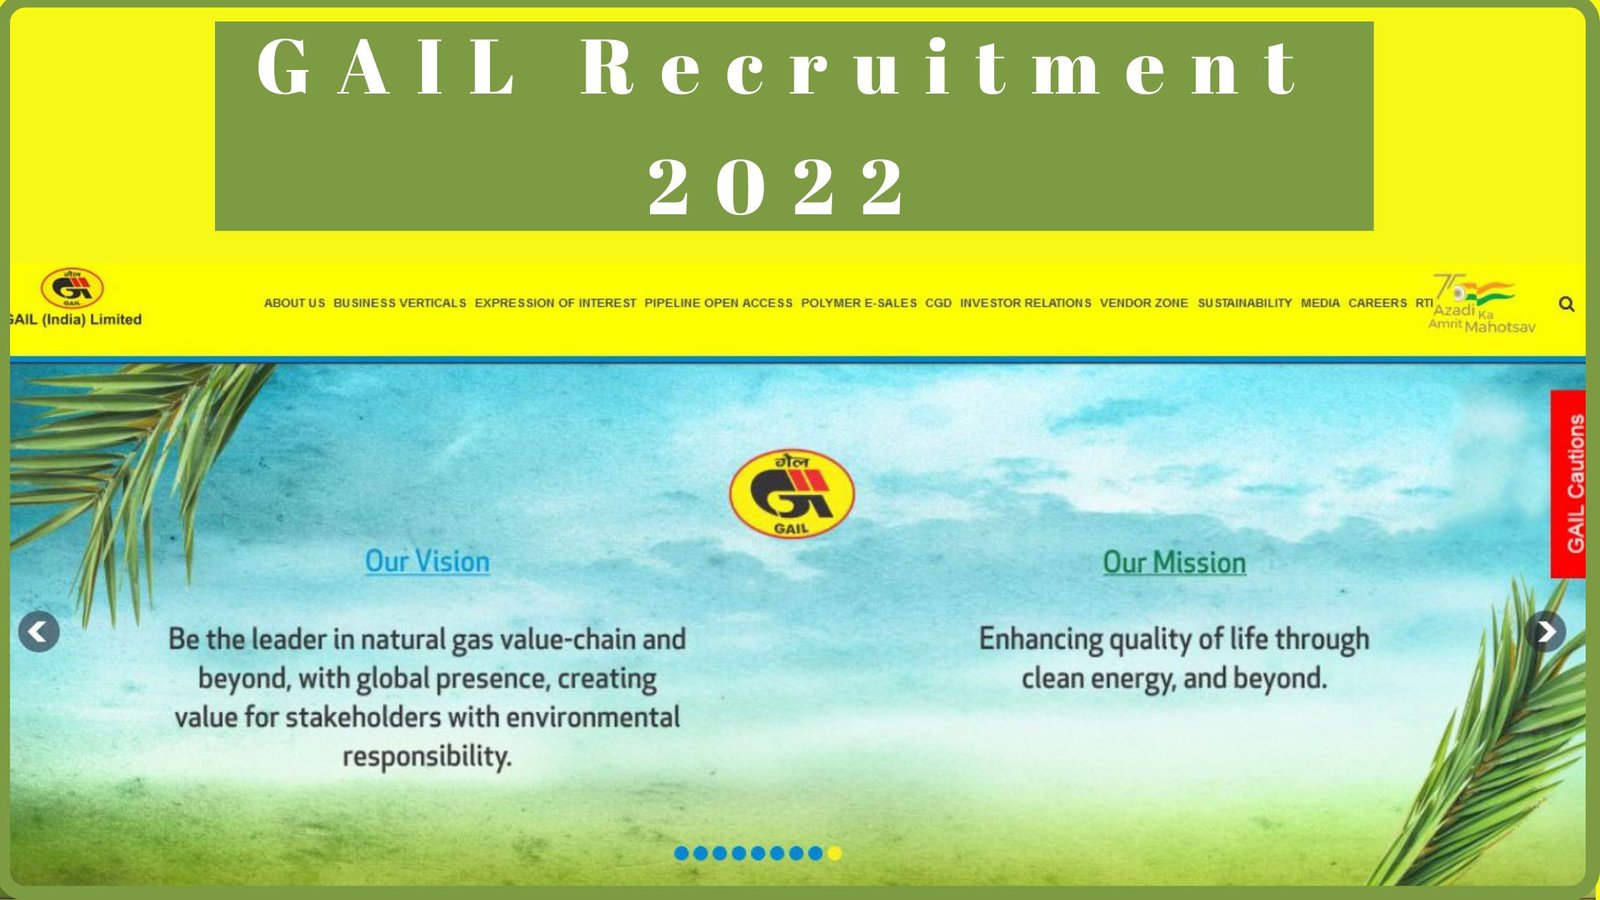 Gail recruitment 2022 | Velaivaippu seithigal 2022 tamil